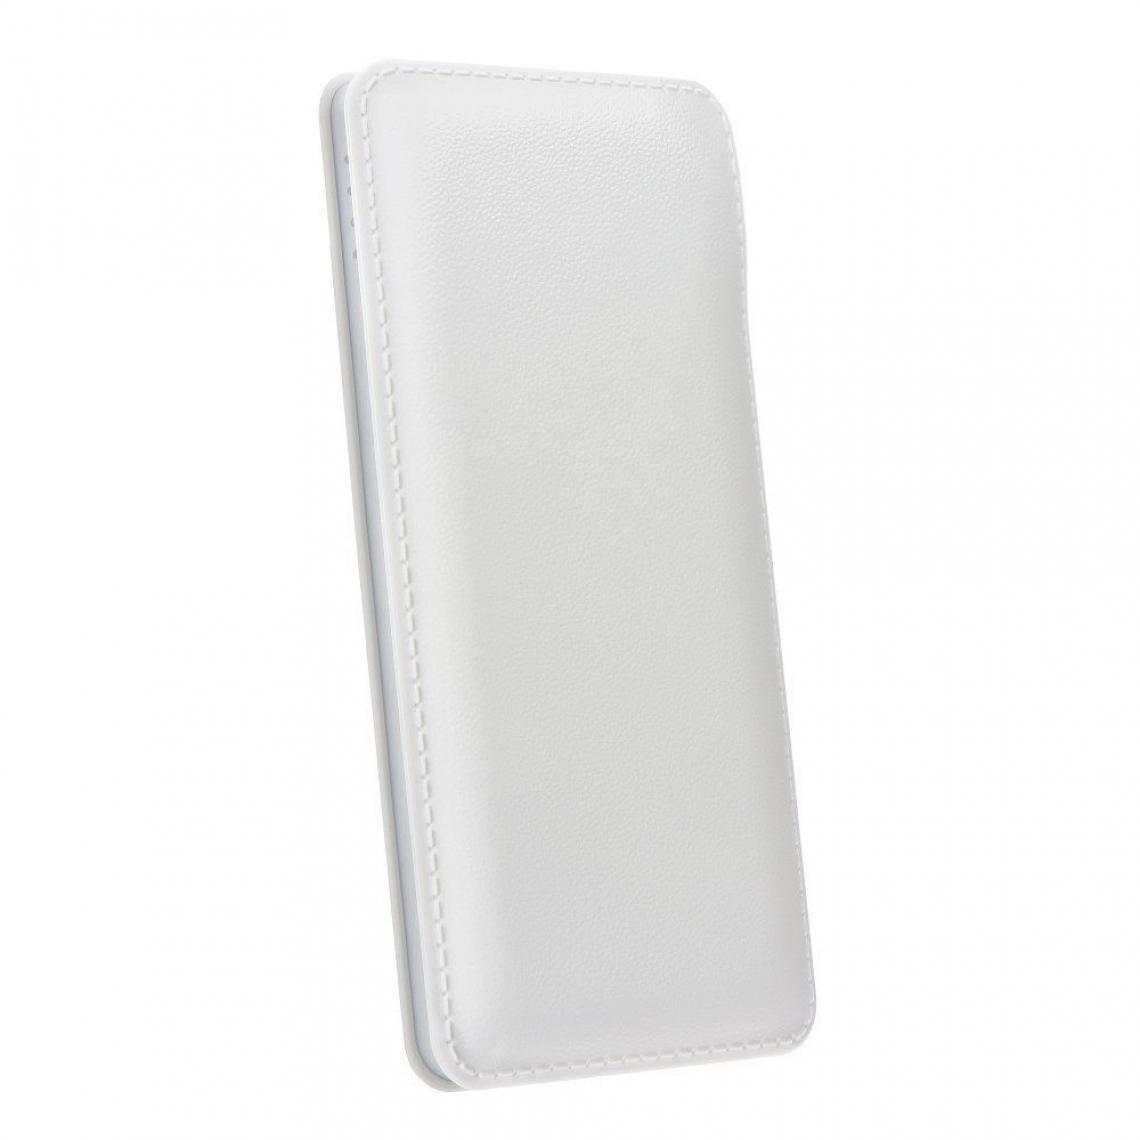 Ozzzo - Chargeur batterie externe 30000 mAh powerbank ozzzo blanc pour SAMSUNG Galaxy J2 J200 - Autres accessoires smartphone